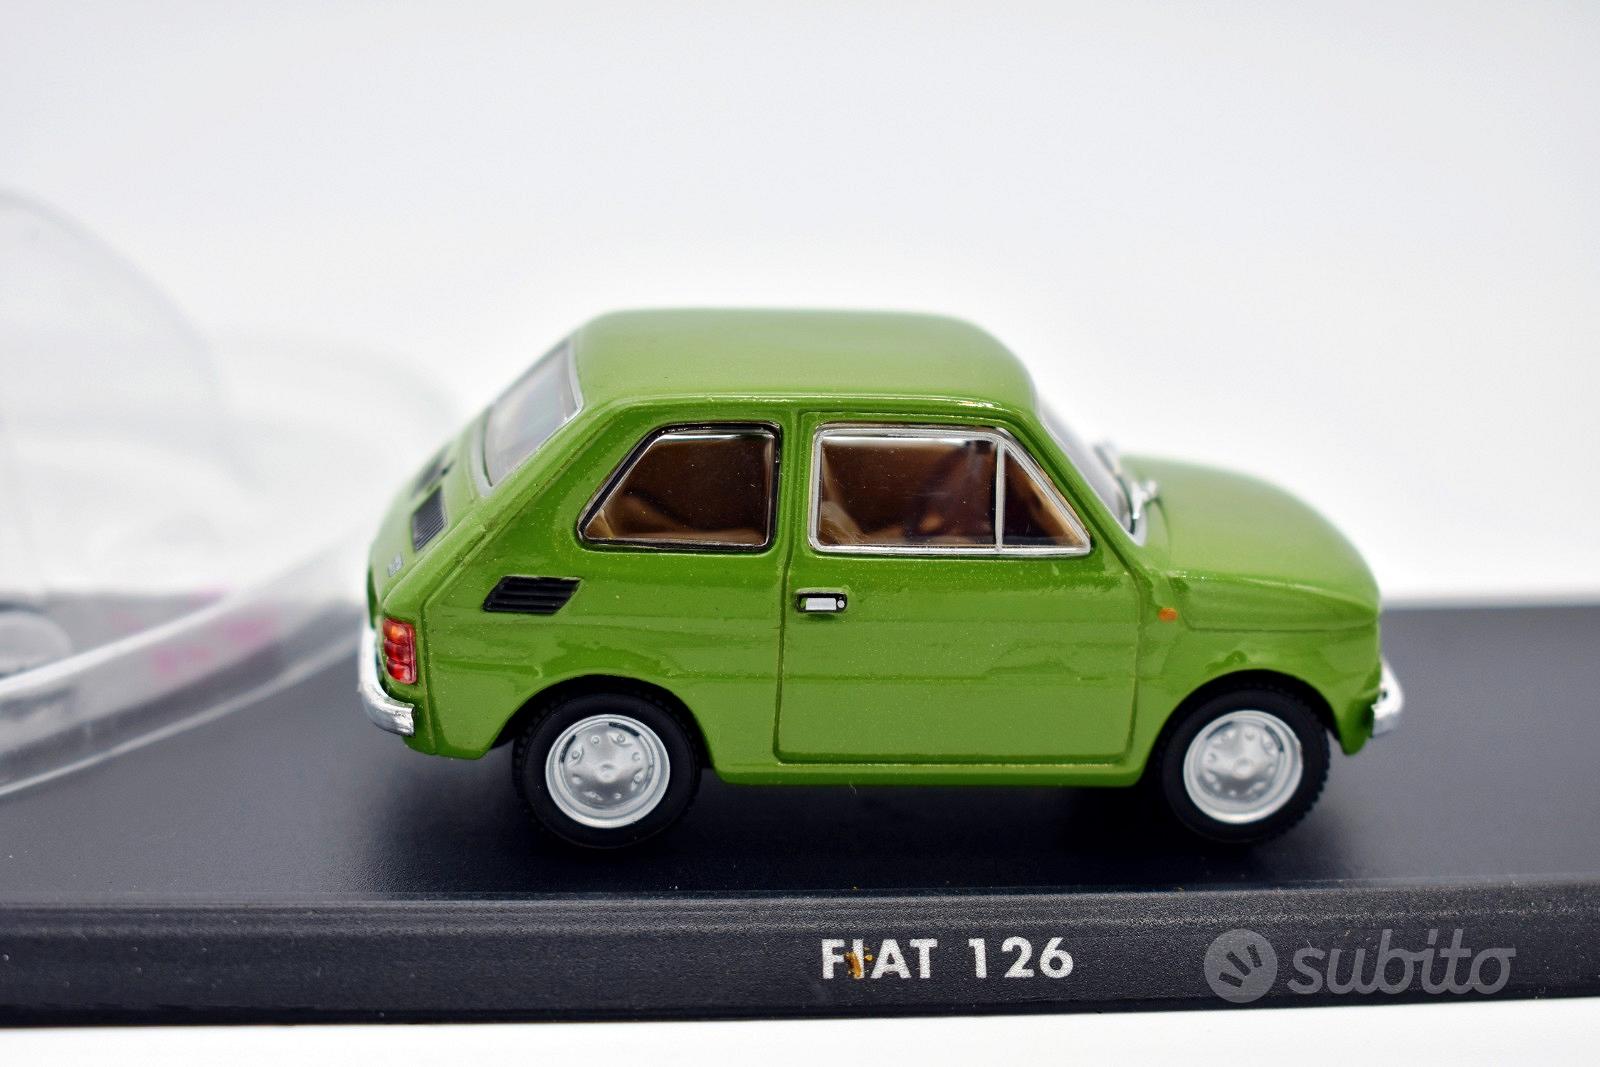 Modellino auto fiat 126 scala 1:43 da collezione - Collezionismo